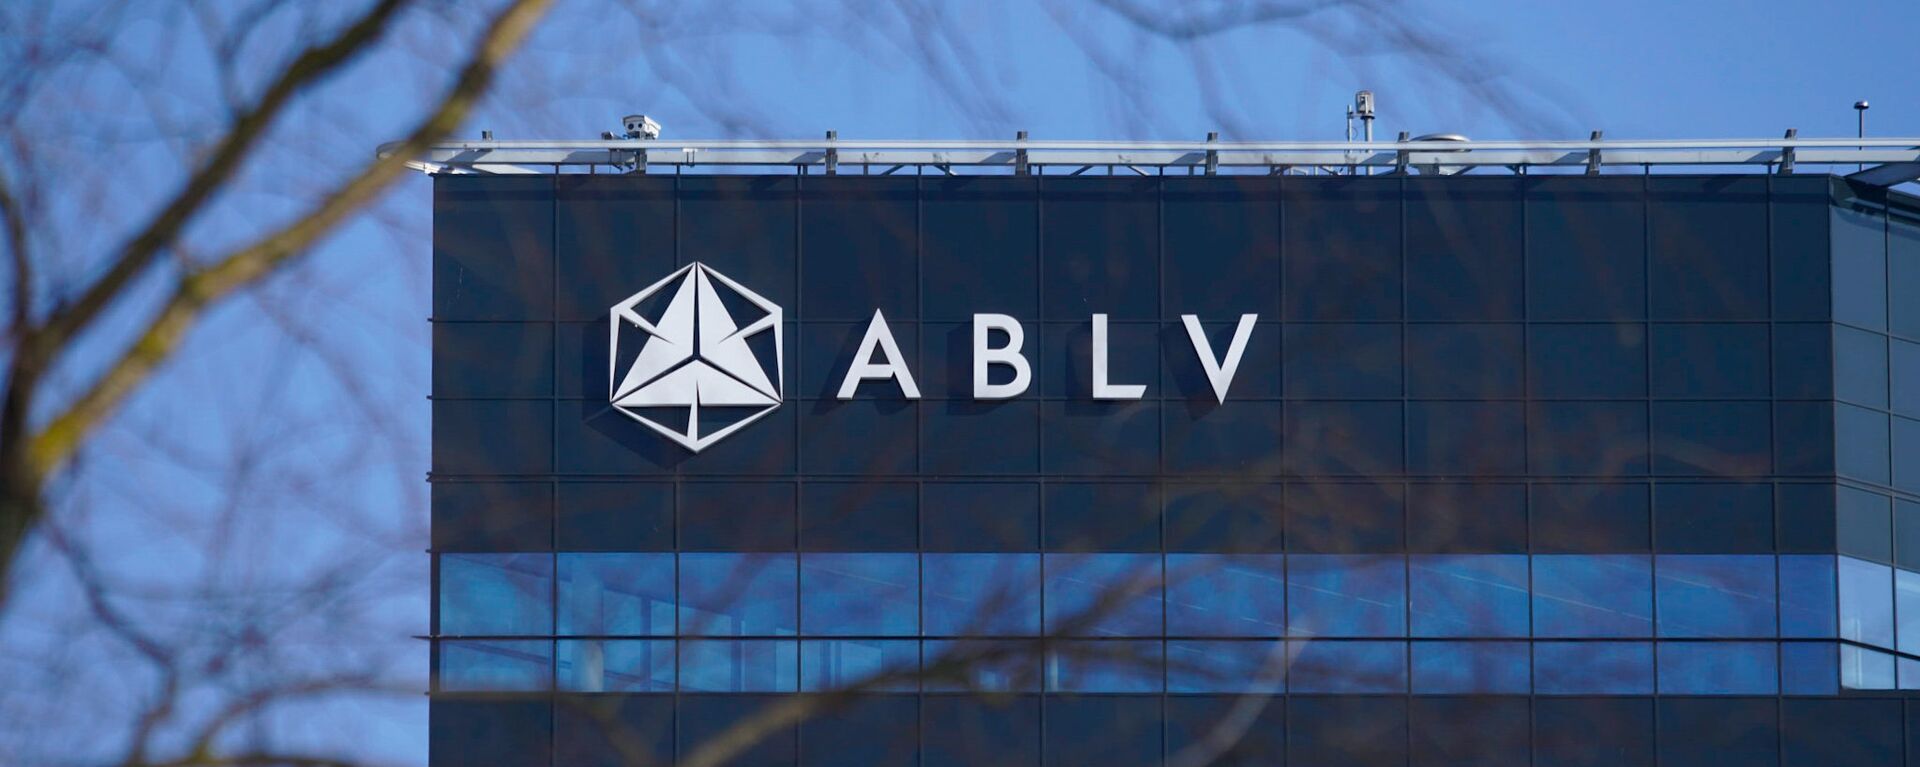 Банк ABLV - Sputnik Латвия, 1920, 14.04.2021